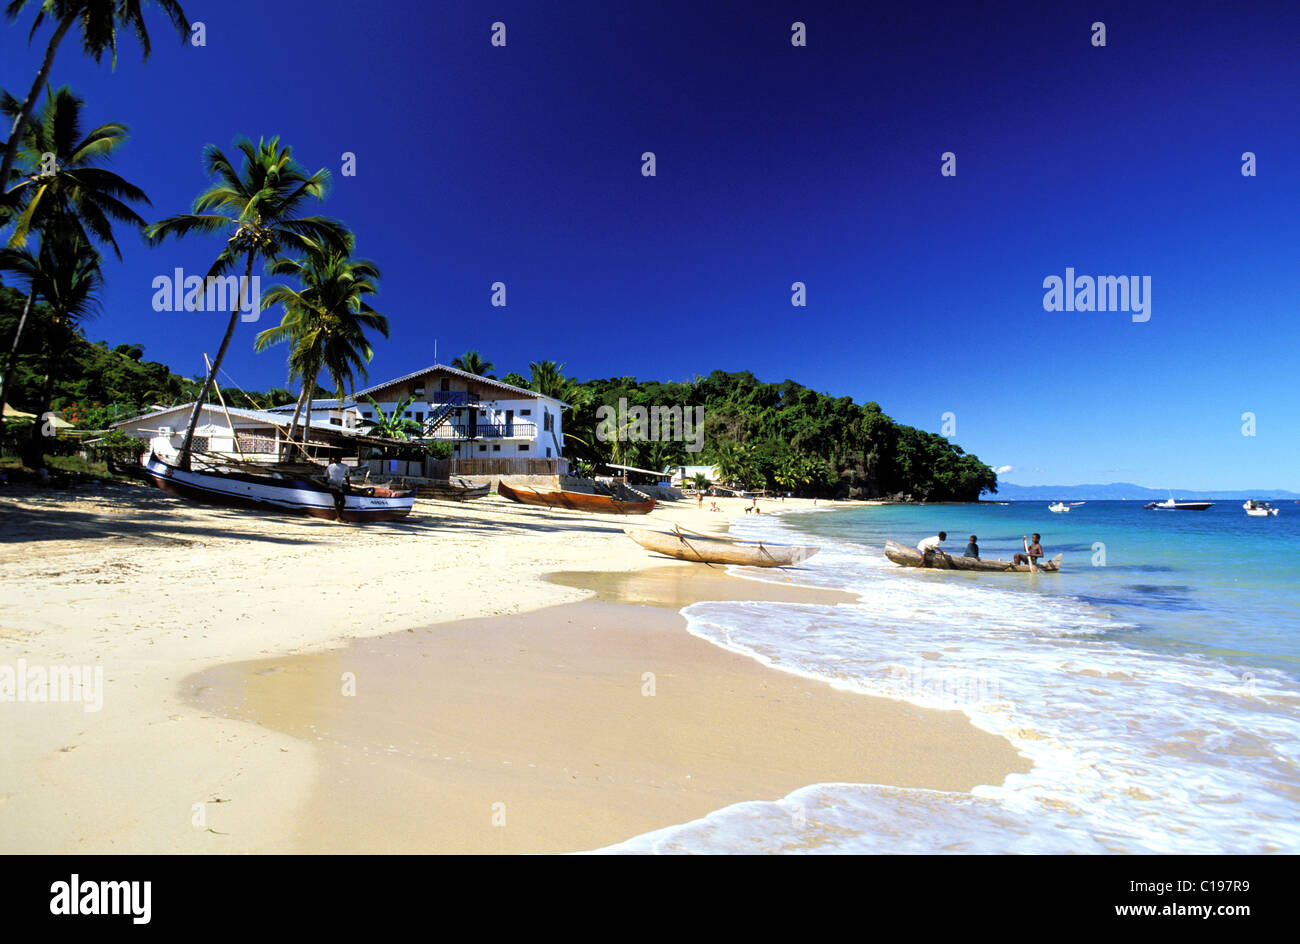 Ambatoloaka beach hi-res stock photography and images - Alamy